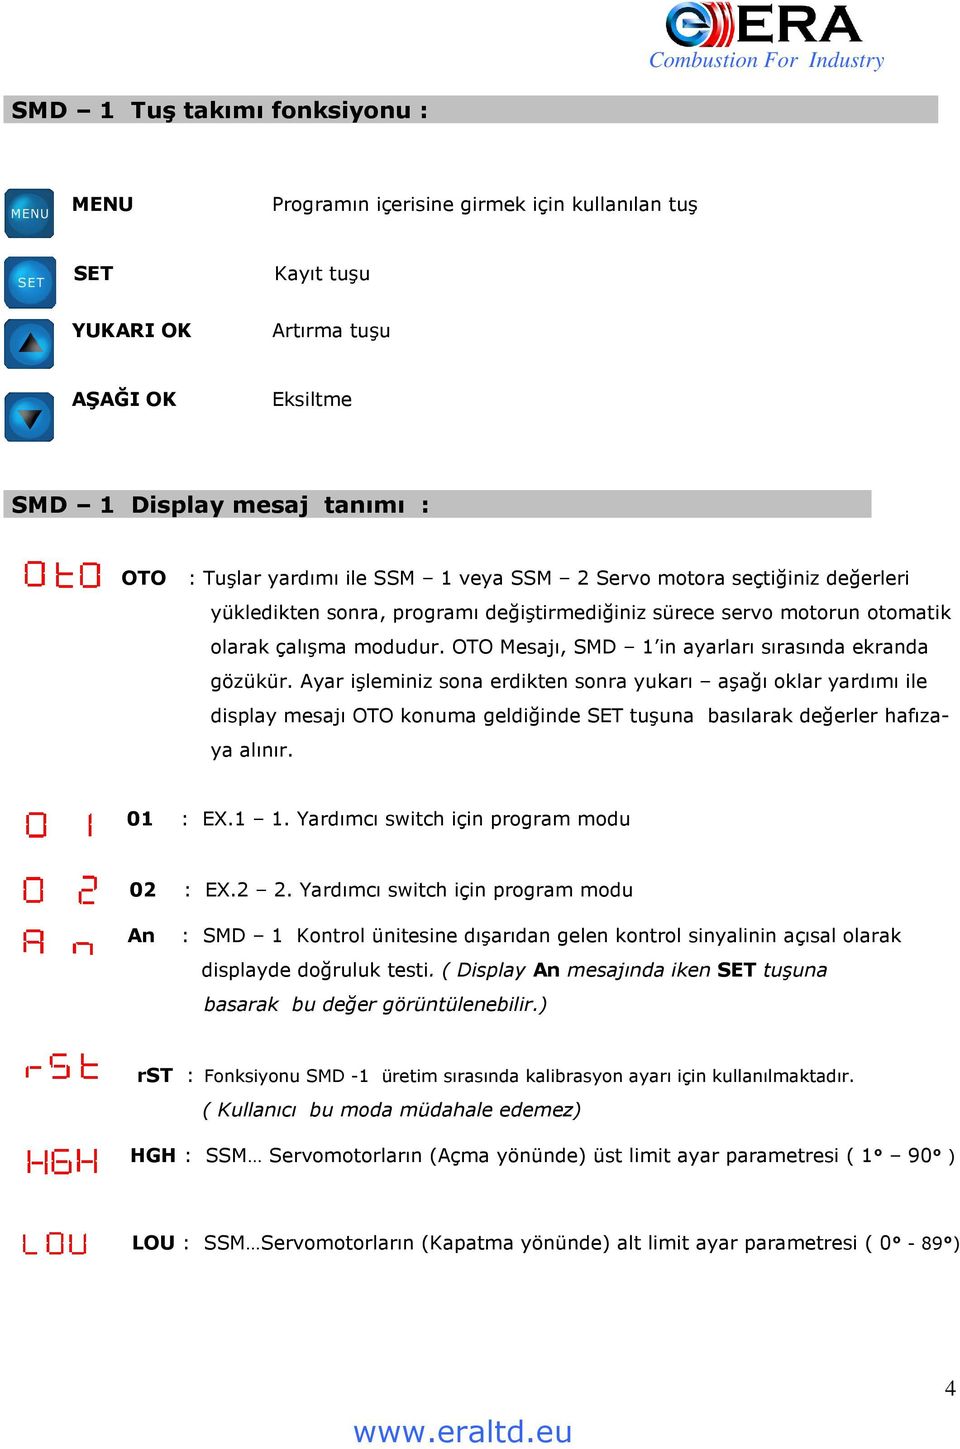 OTO Mesajı, SMD 1 in ayarları sırasında ekranda gözükür.